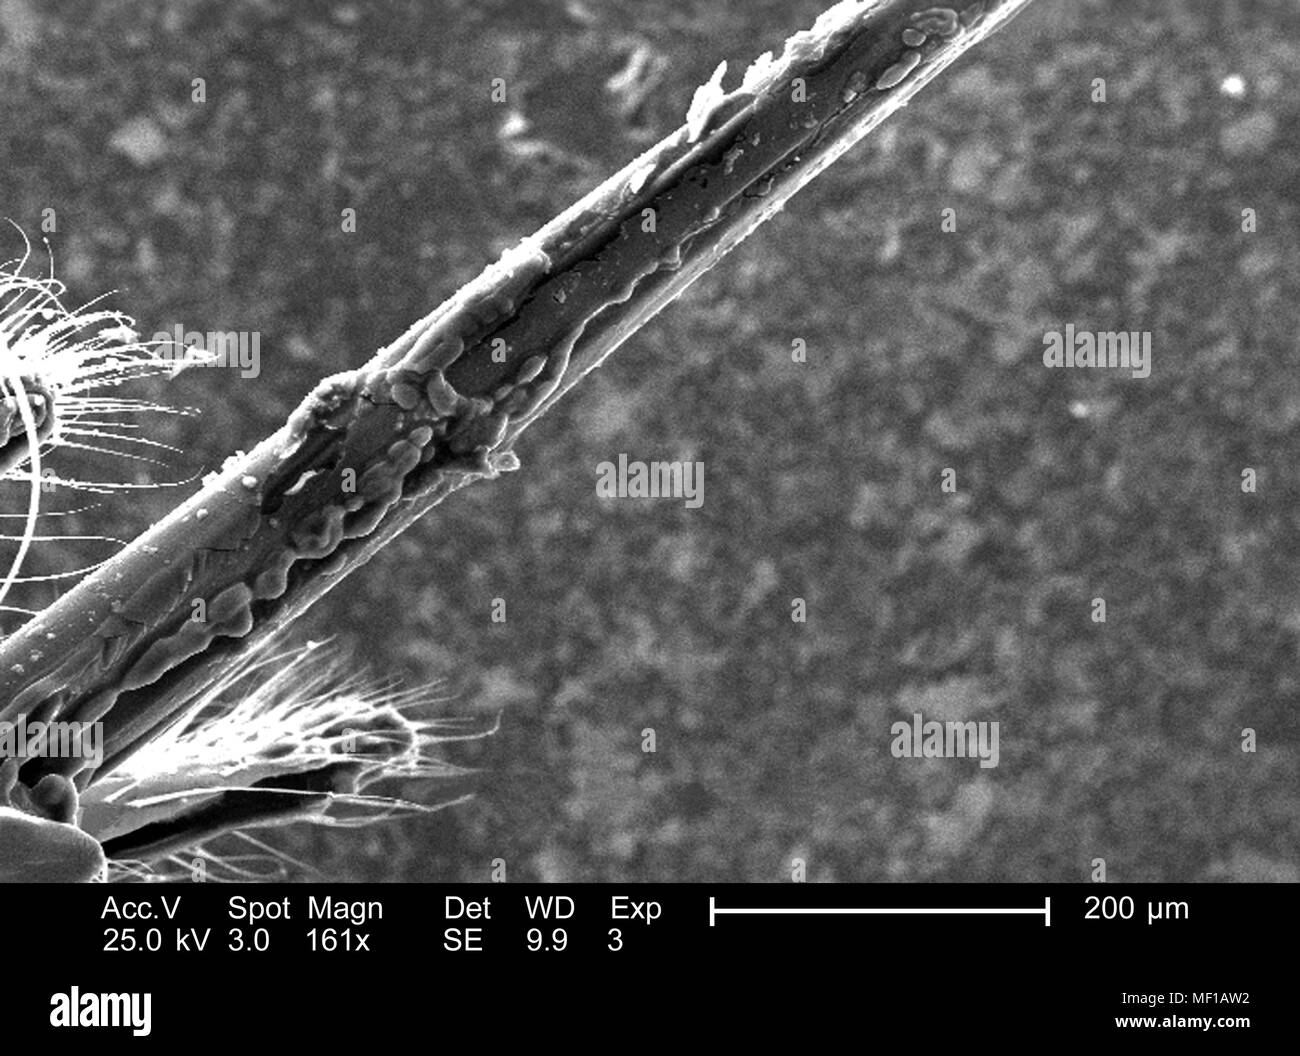 Ultrastrukturforschung morphologische Details eines nicht identifizierten hymenopteran Insekt stinger Apparat, in der 161 x vergrößert Rasterelektronenmikroskopische (SEM) Bild 2005 dargestellt. Mit freundlicher Seuchenkontrollzentren (CDC)/Janice Haney Carr. () Stockfoto